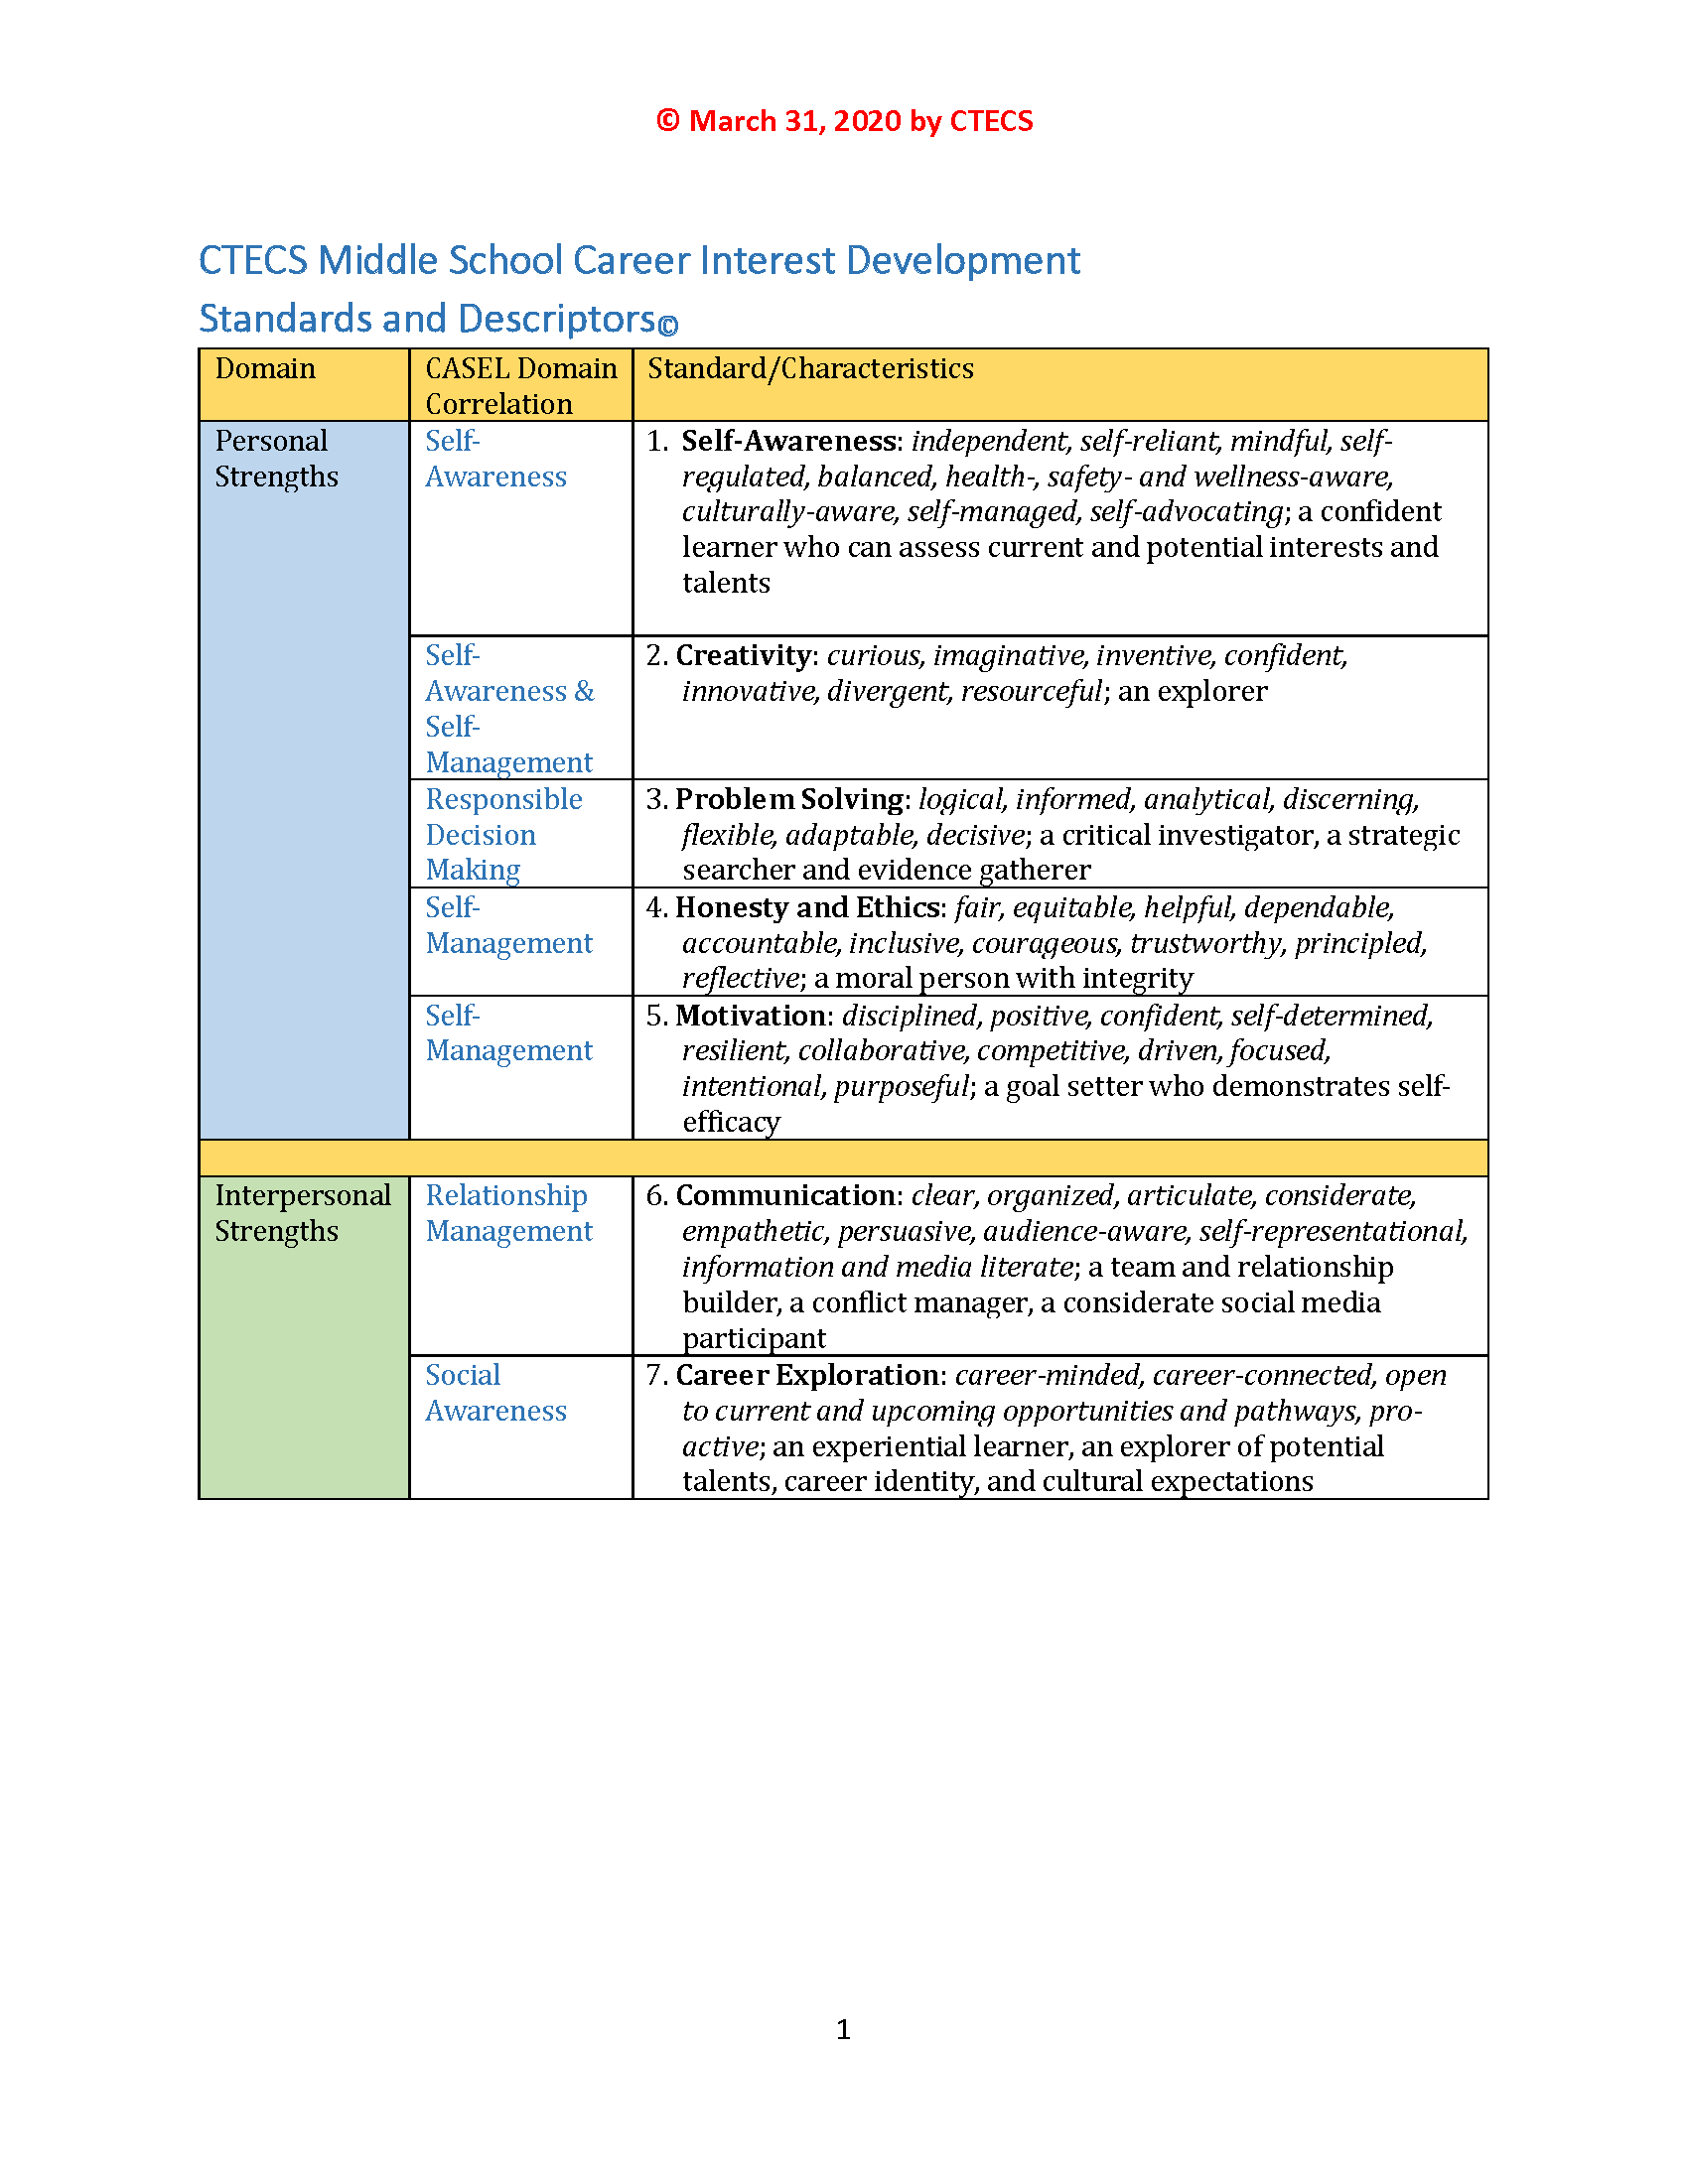 CTECS Middle School Career Interest Development Standards and Descriptors©